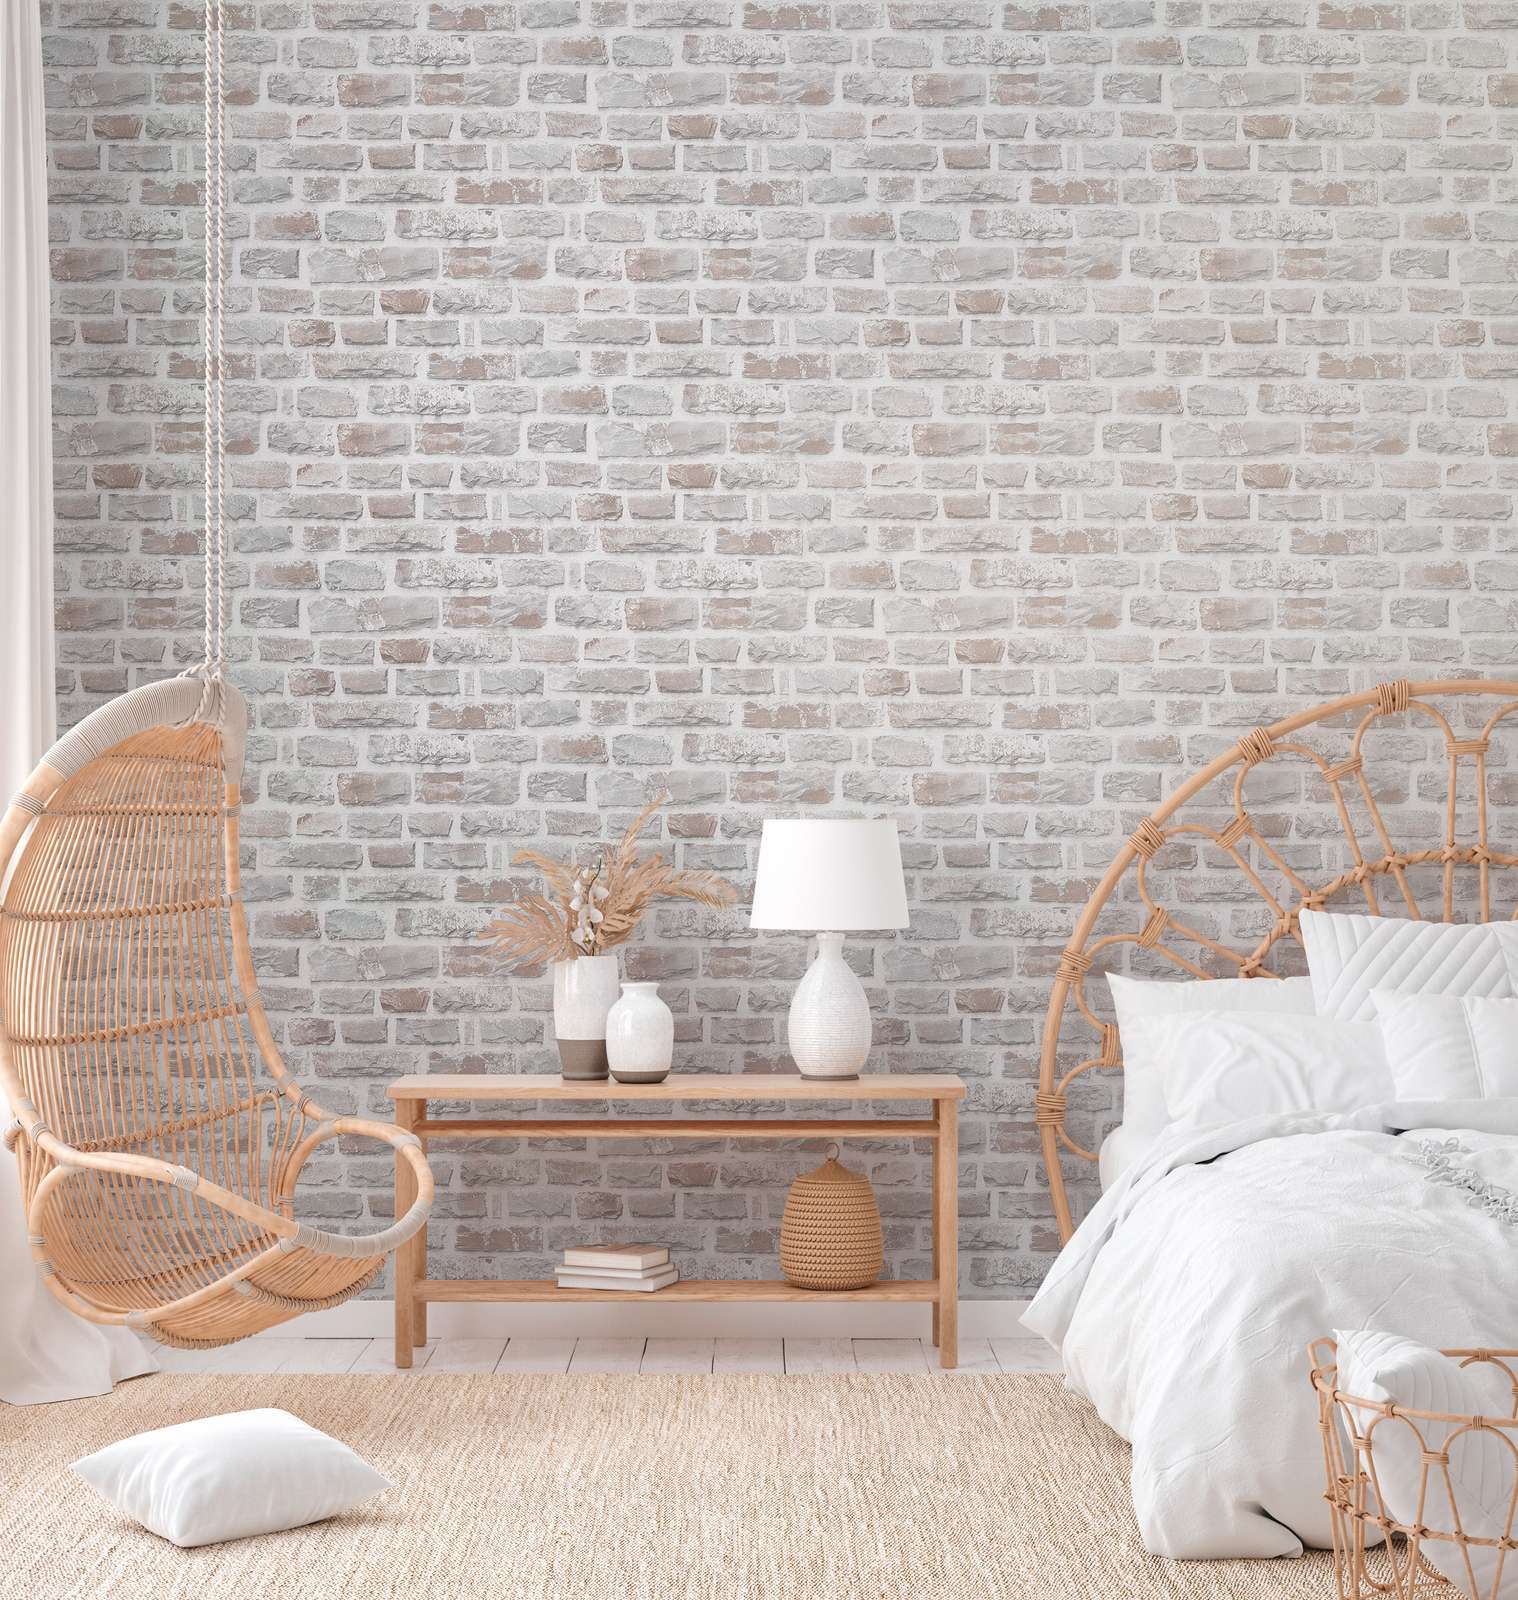             Vliesbehang met natuurstenen muur PVC-vrij - grijs, wit
        